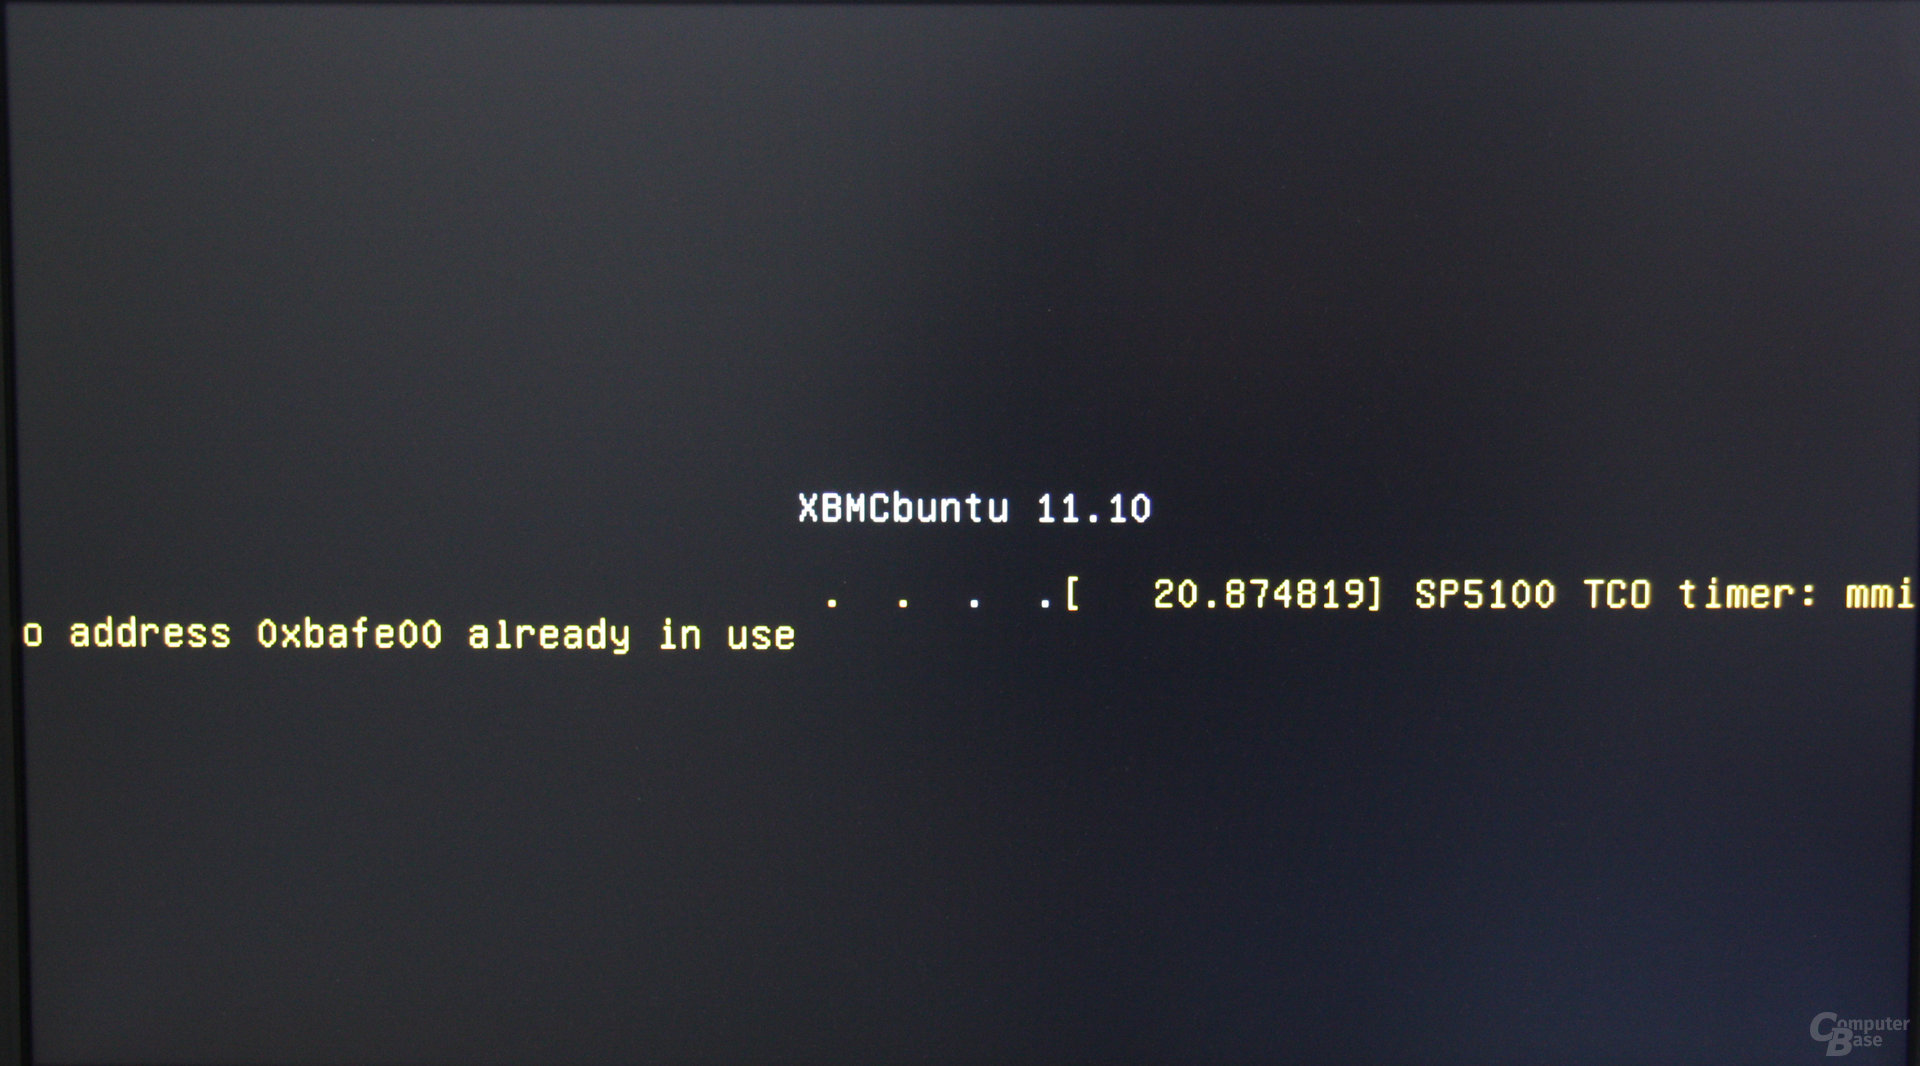 XBMCbuntu auf der Zbox nano XS AD11 Plus